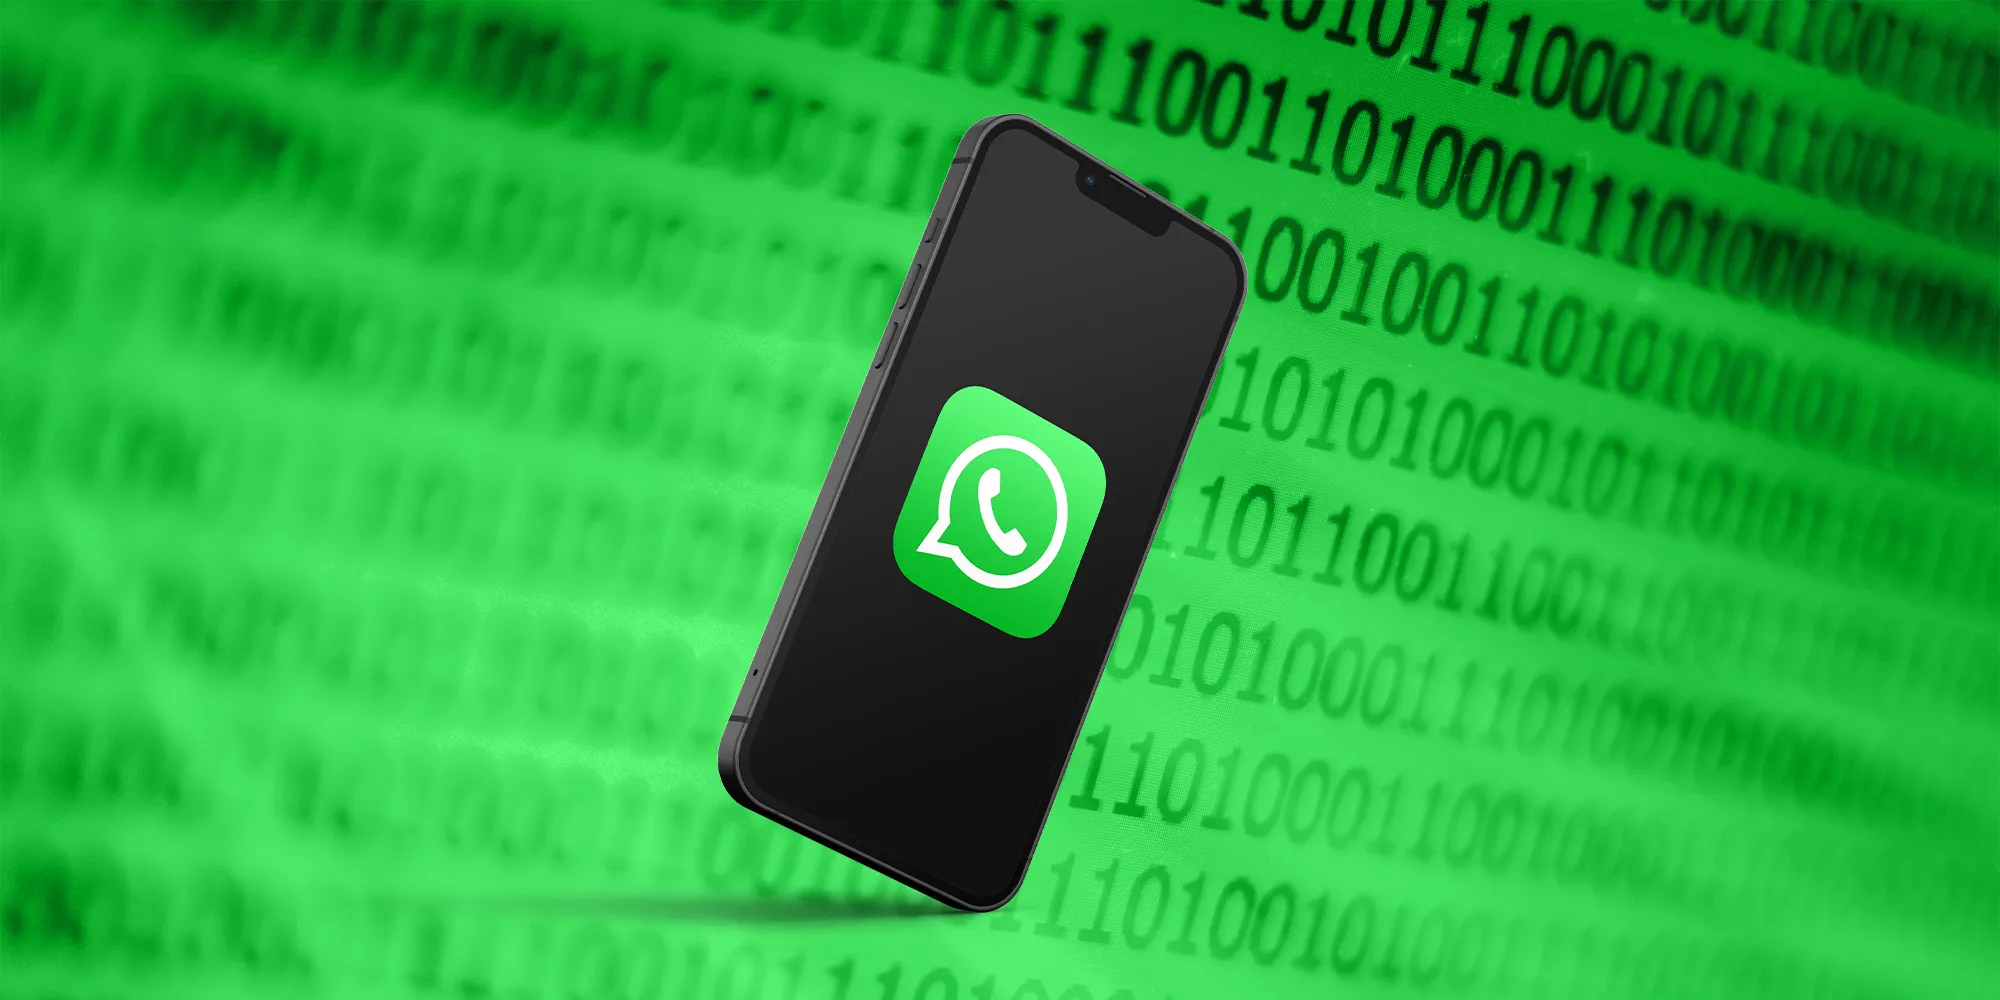 WhatsApp; Güvenliği Üst Seviyeye Çıkarmak İçin Çift Doğrulama İsteyecek!